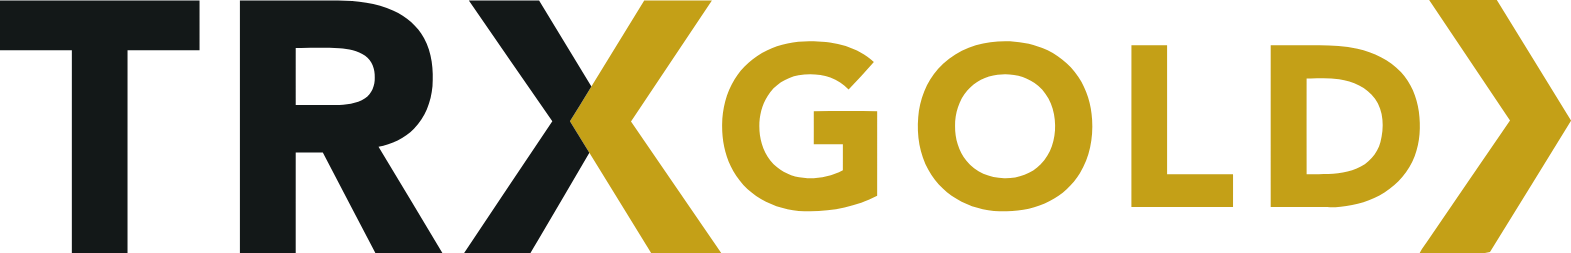 Tanzanian Gold Corporation logo large (transparent PNG)